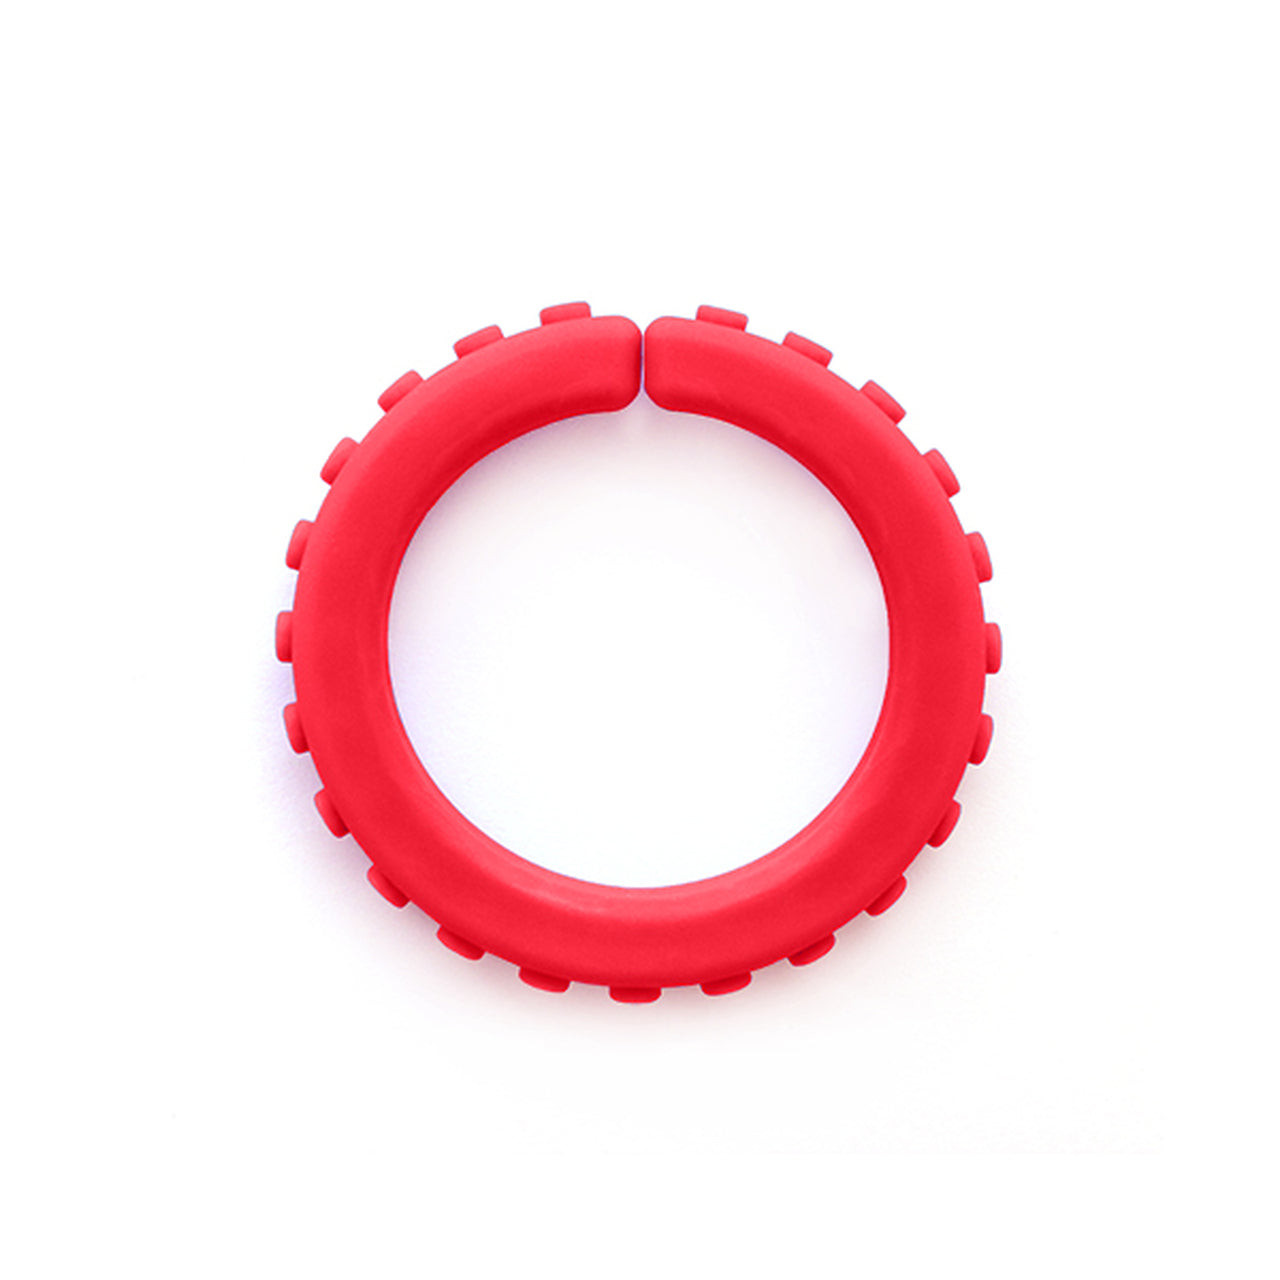 ARK's Brick Bracelet (RED)